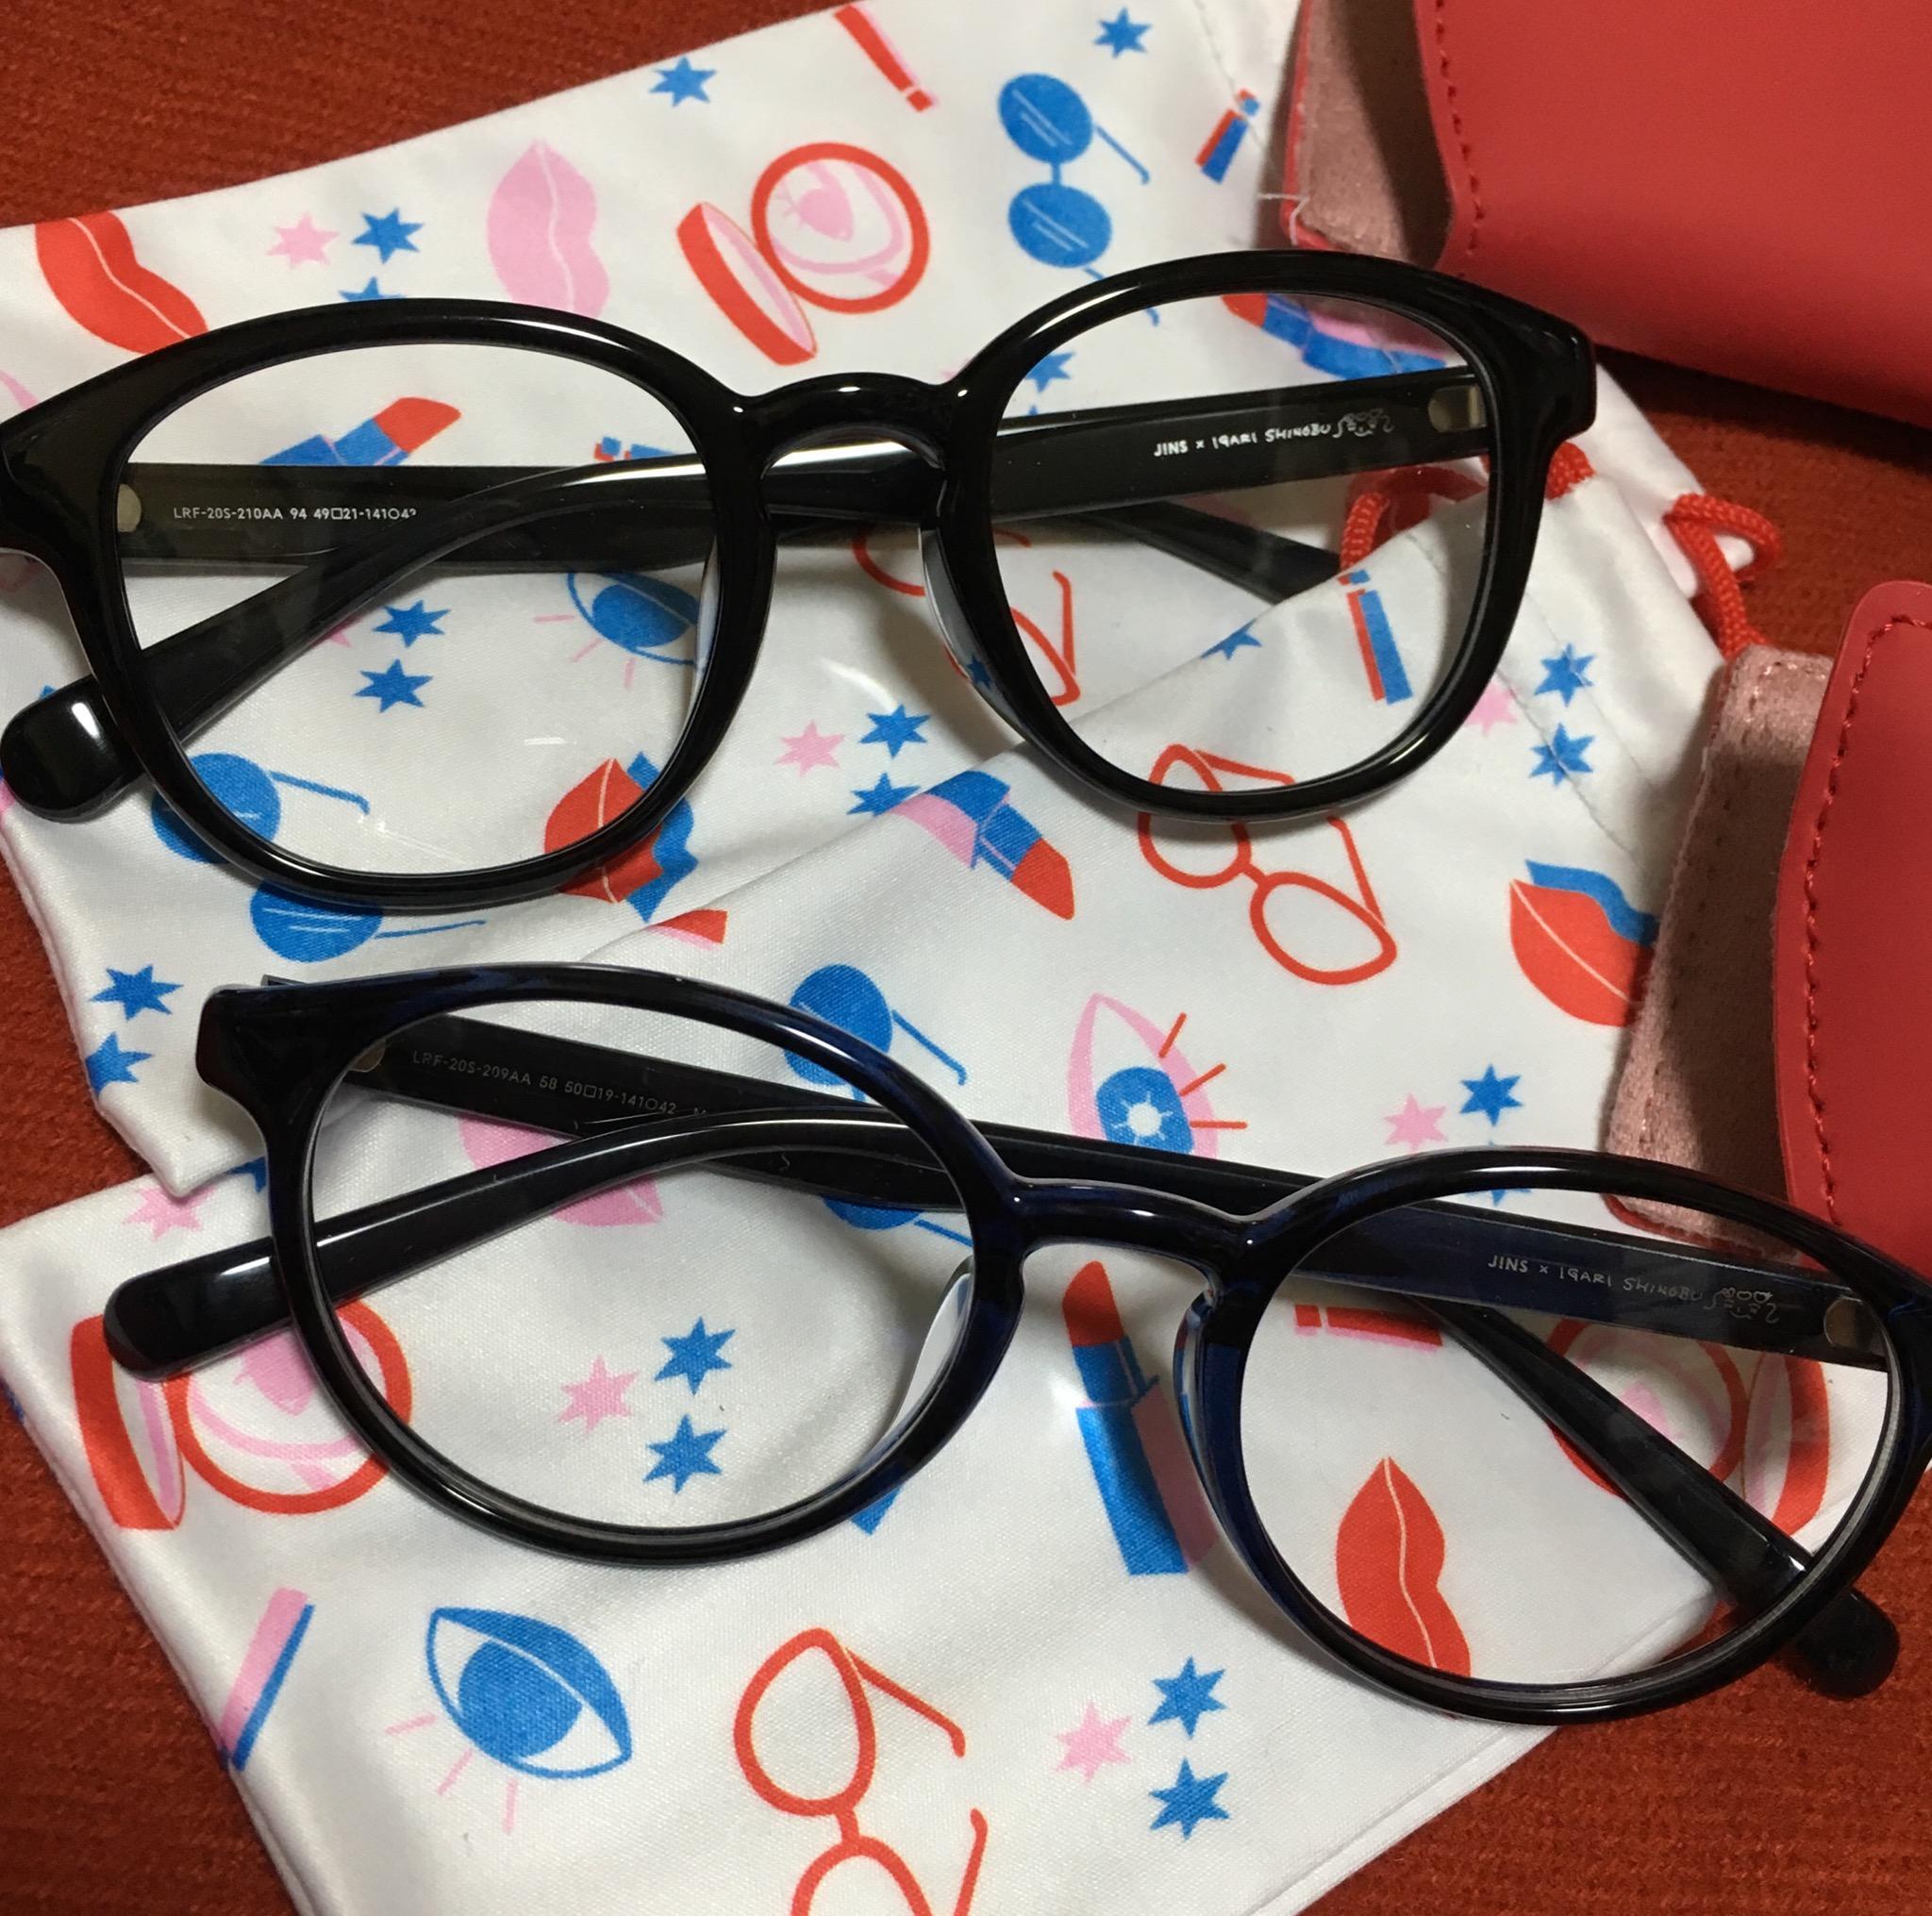 Jins イガリシノブコラボ眼鏡 アイメイク休日デー ころすけ もーにんぐさんのブログ Cosme アットコスメ